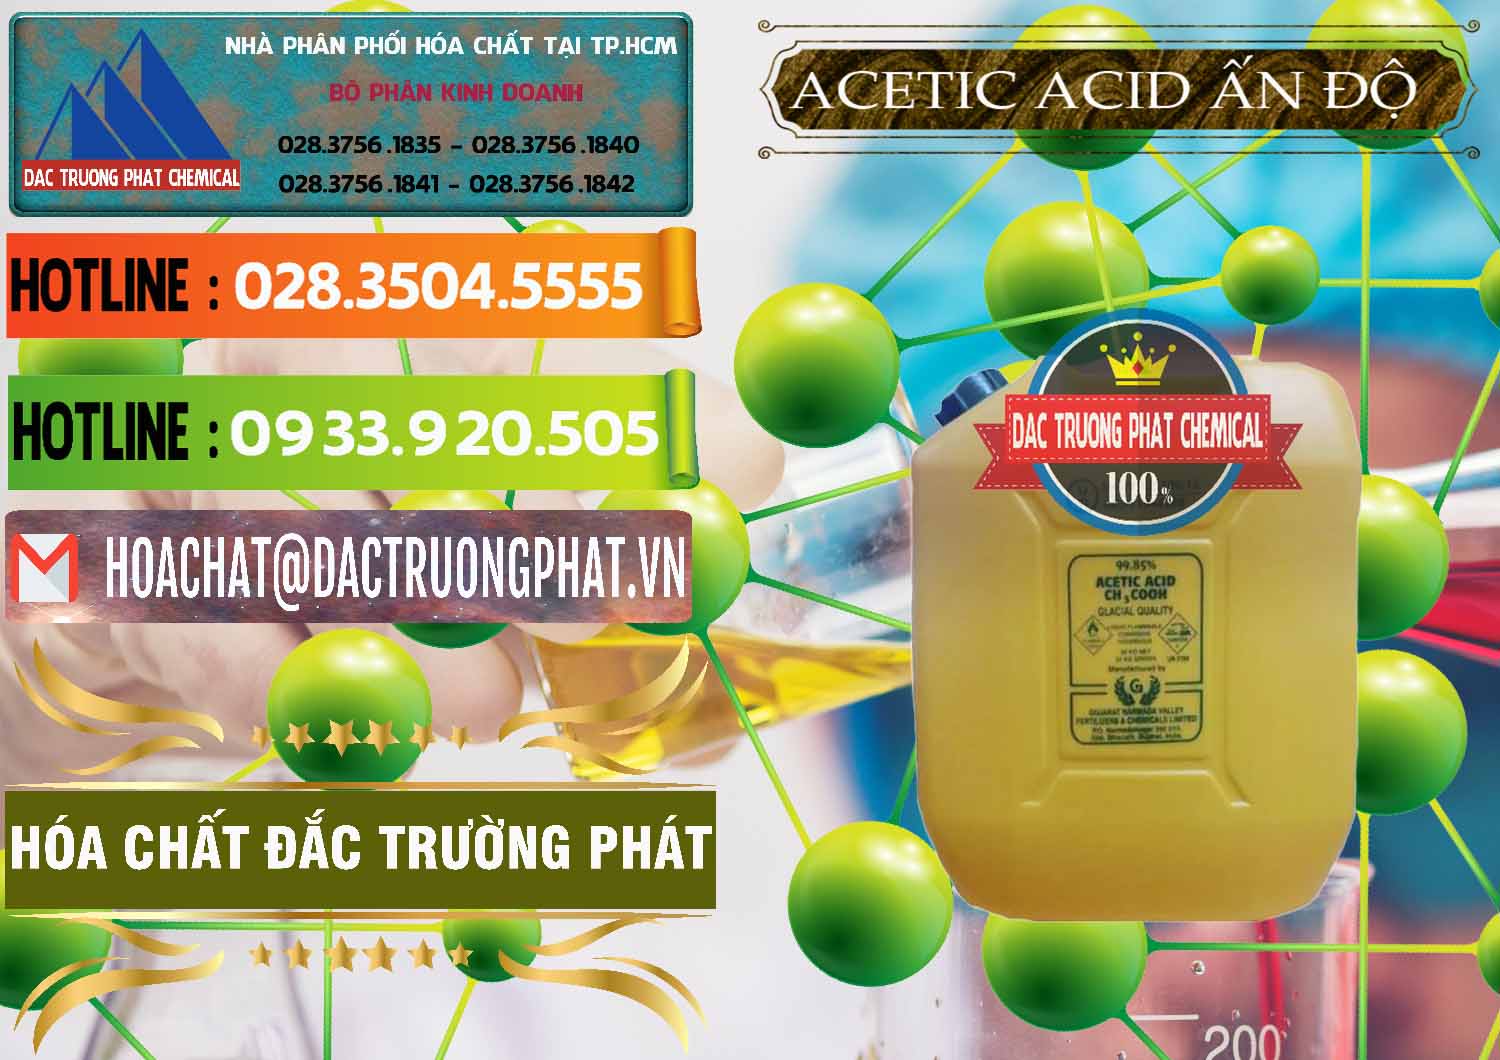 Công ty chuyên cung cấp ( bán ) Acetic Acid – Axit Acetic Ấn Độ India - 0359 - Cty cung cấp ( kinh doanh ) hóa chất tại TP.HCM - cungcaphoachat.com.vn